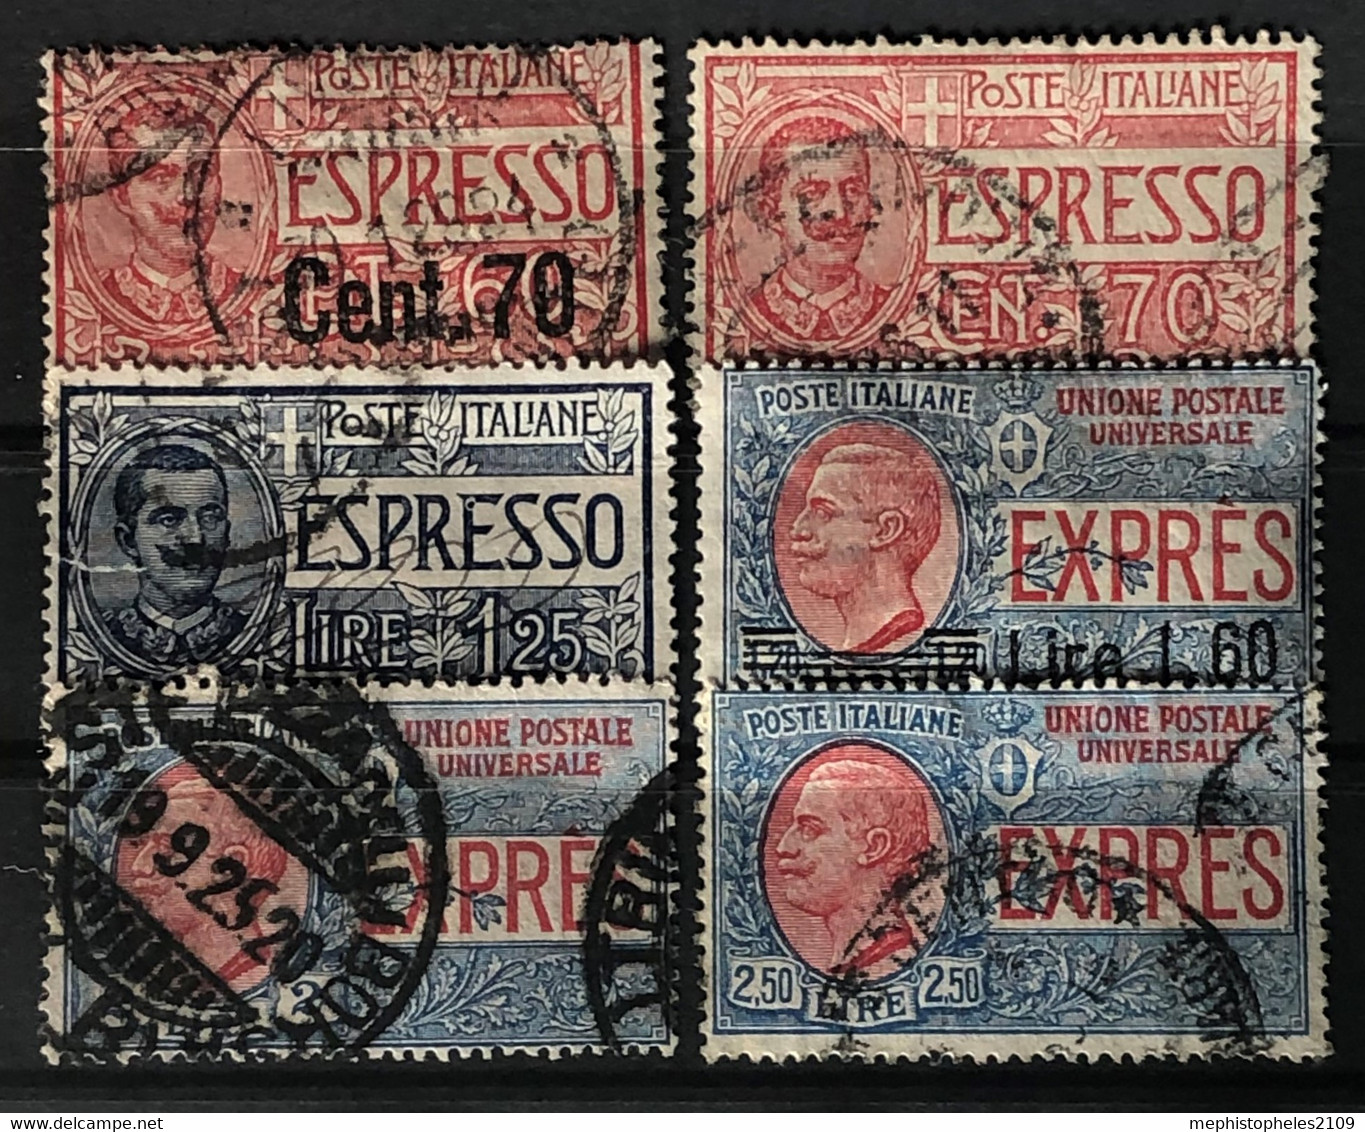 ITALY / ITALIA 1903-26 - Canceled - Sc# E4, E5, E7, E8, E12, E13 - Express Mail - Correo Urgente